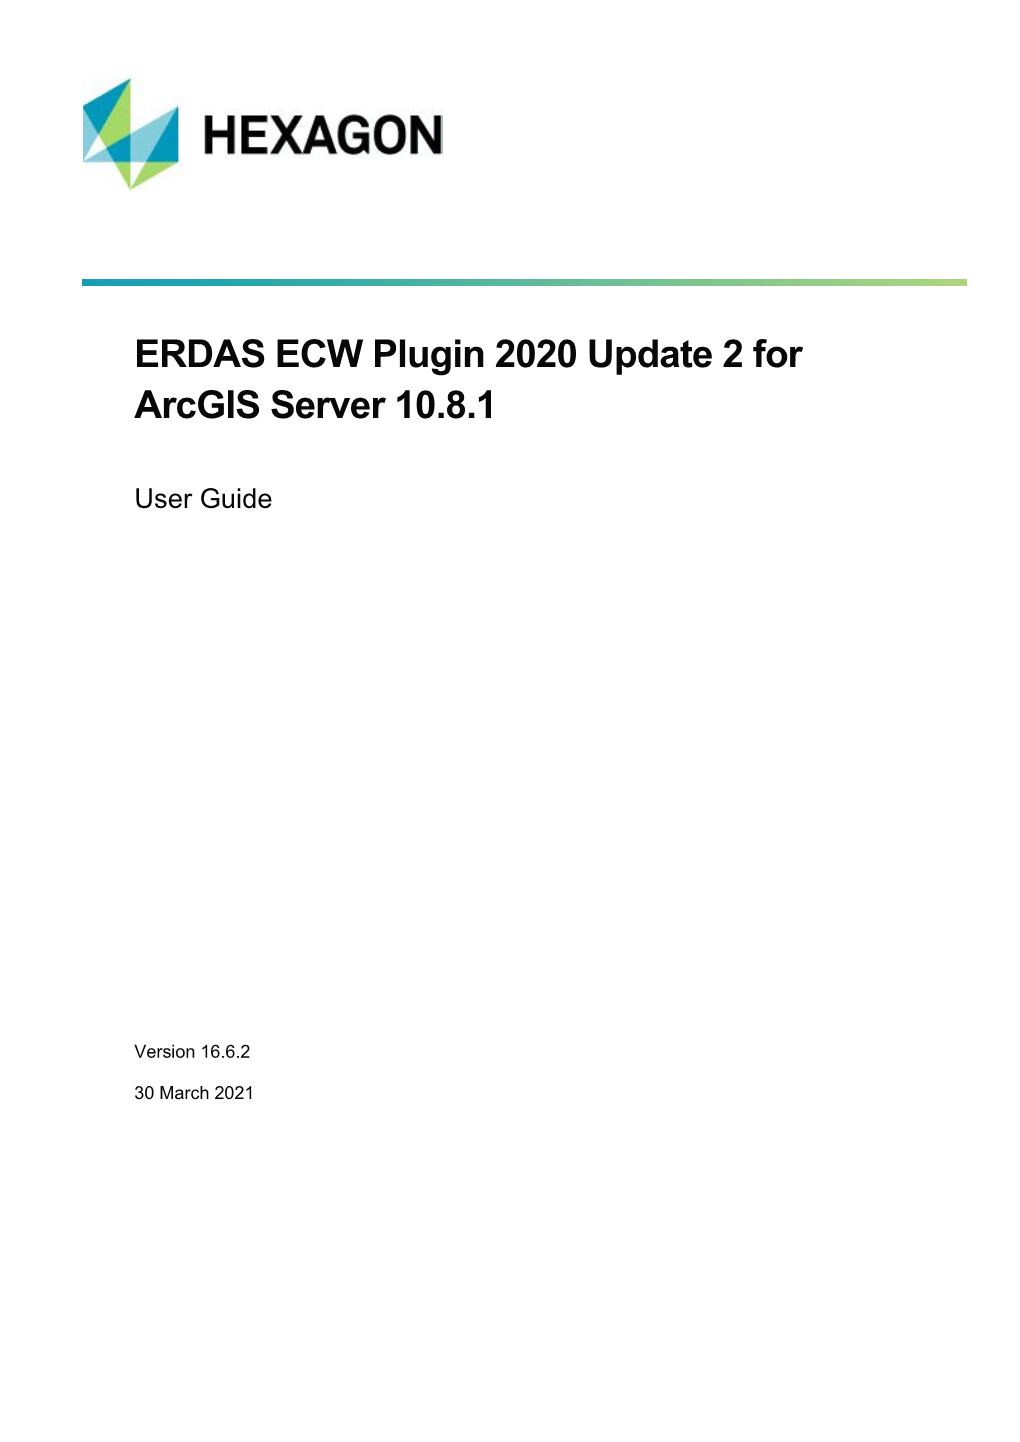 ERDAS ECW Plugin 2020 Update 2 for Arcgis Server 10.8.1